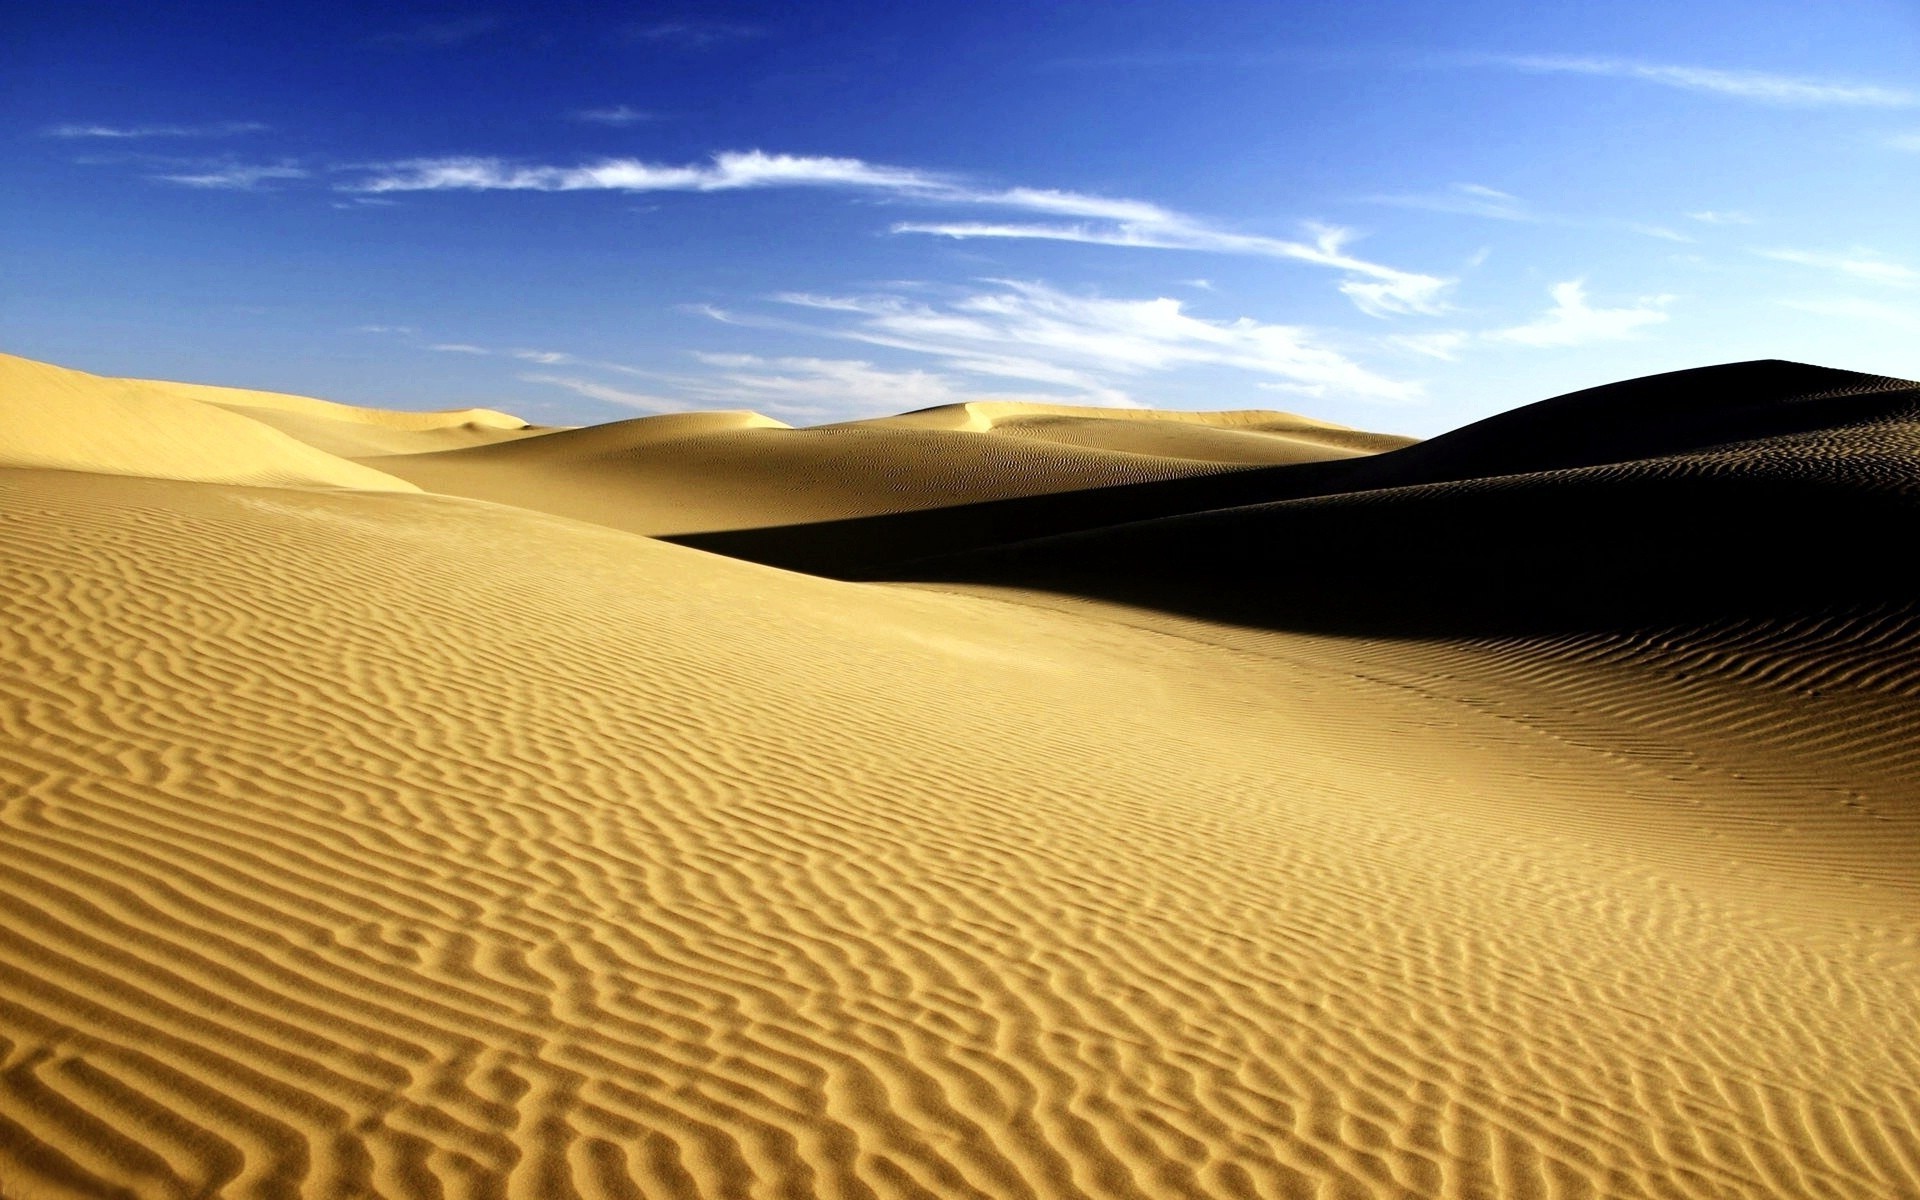 пустыни песок дюна бесплодной один горячая арид сухой путешествия приключения солнце пляж след